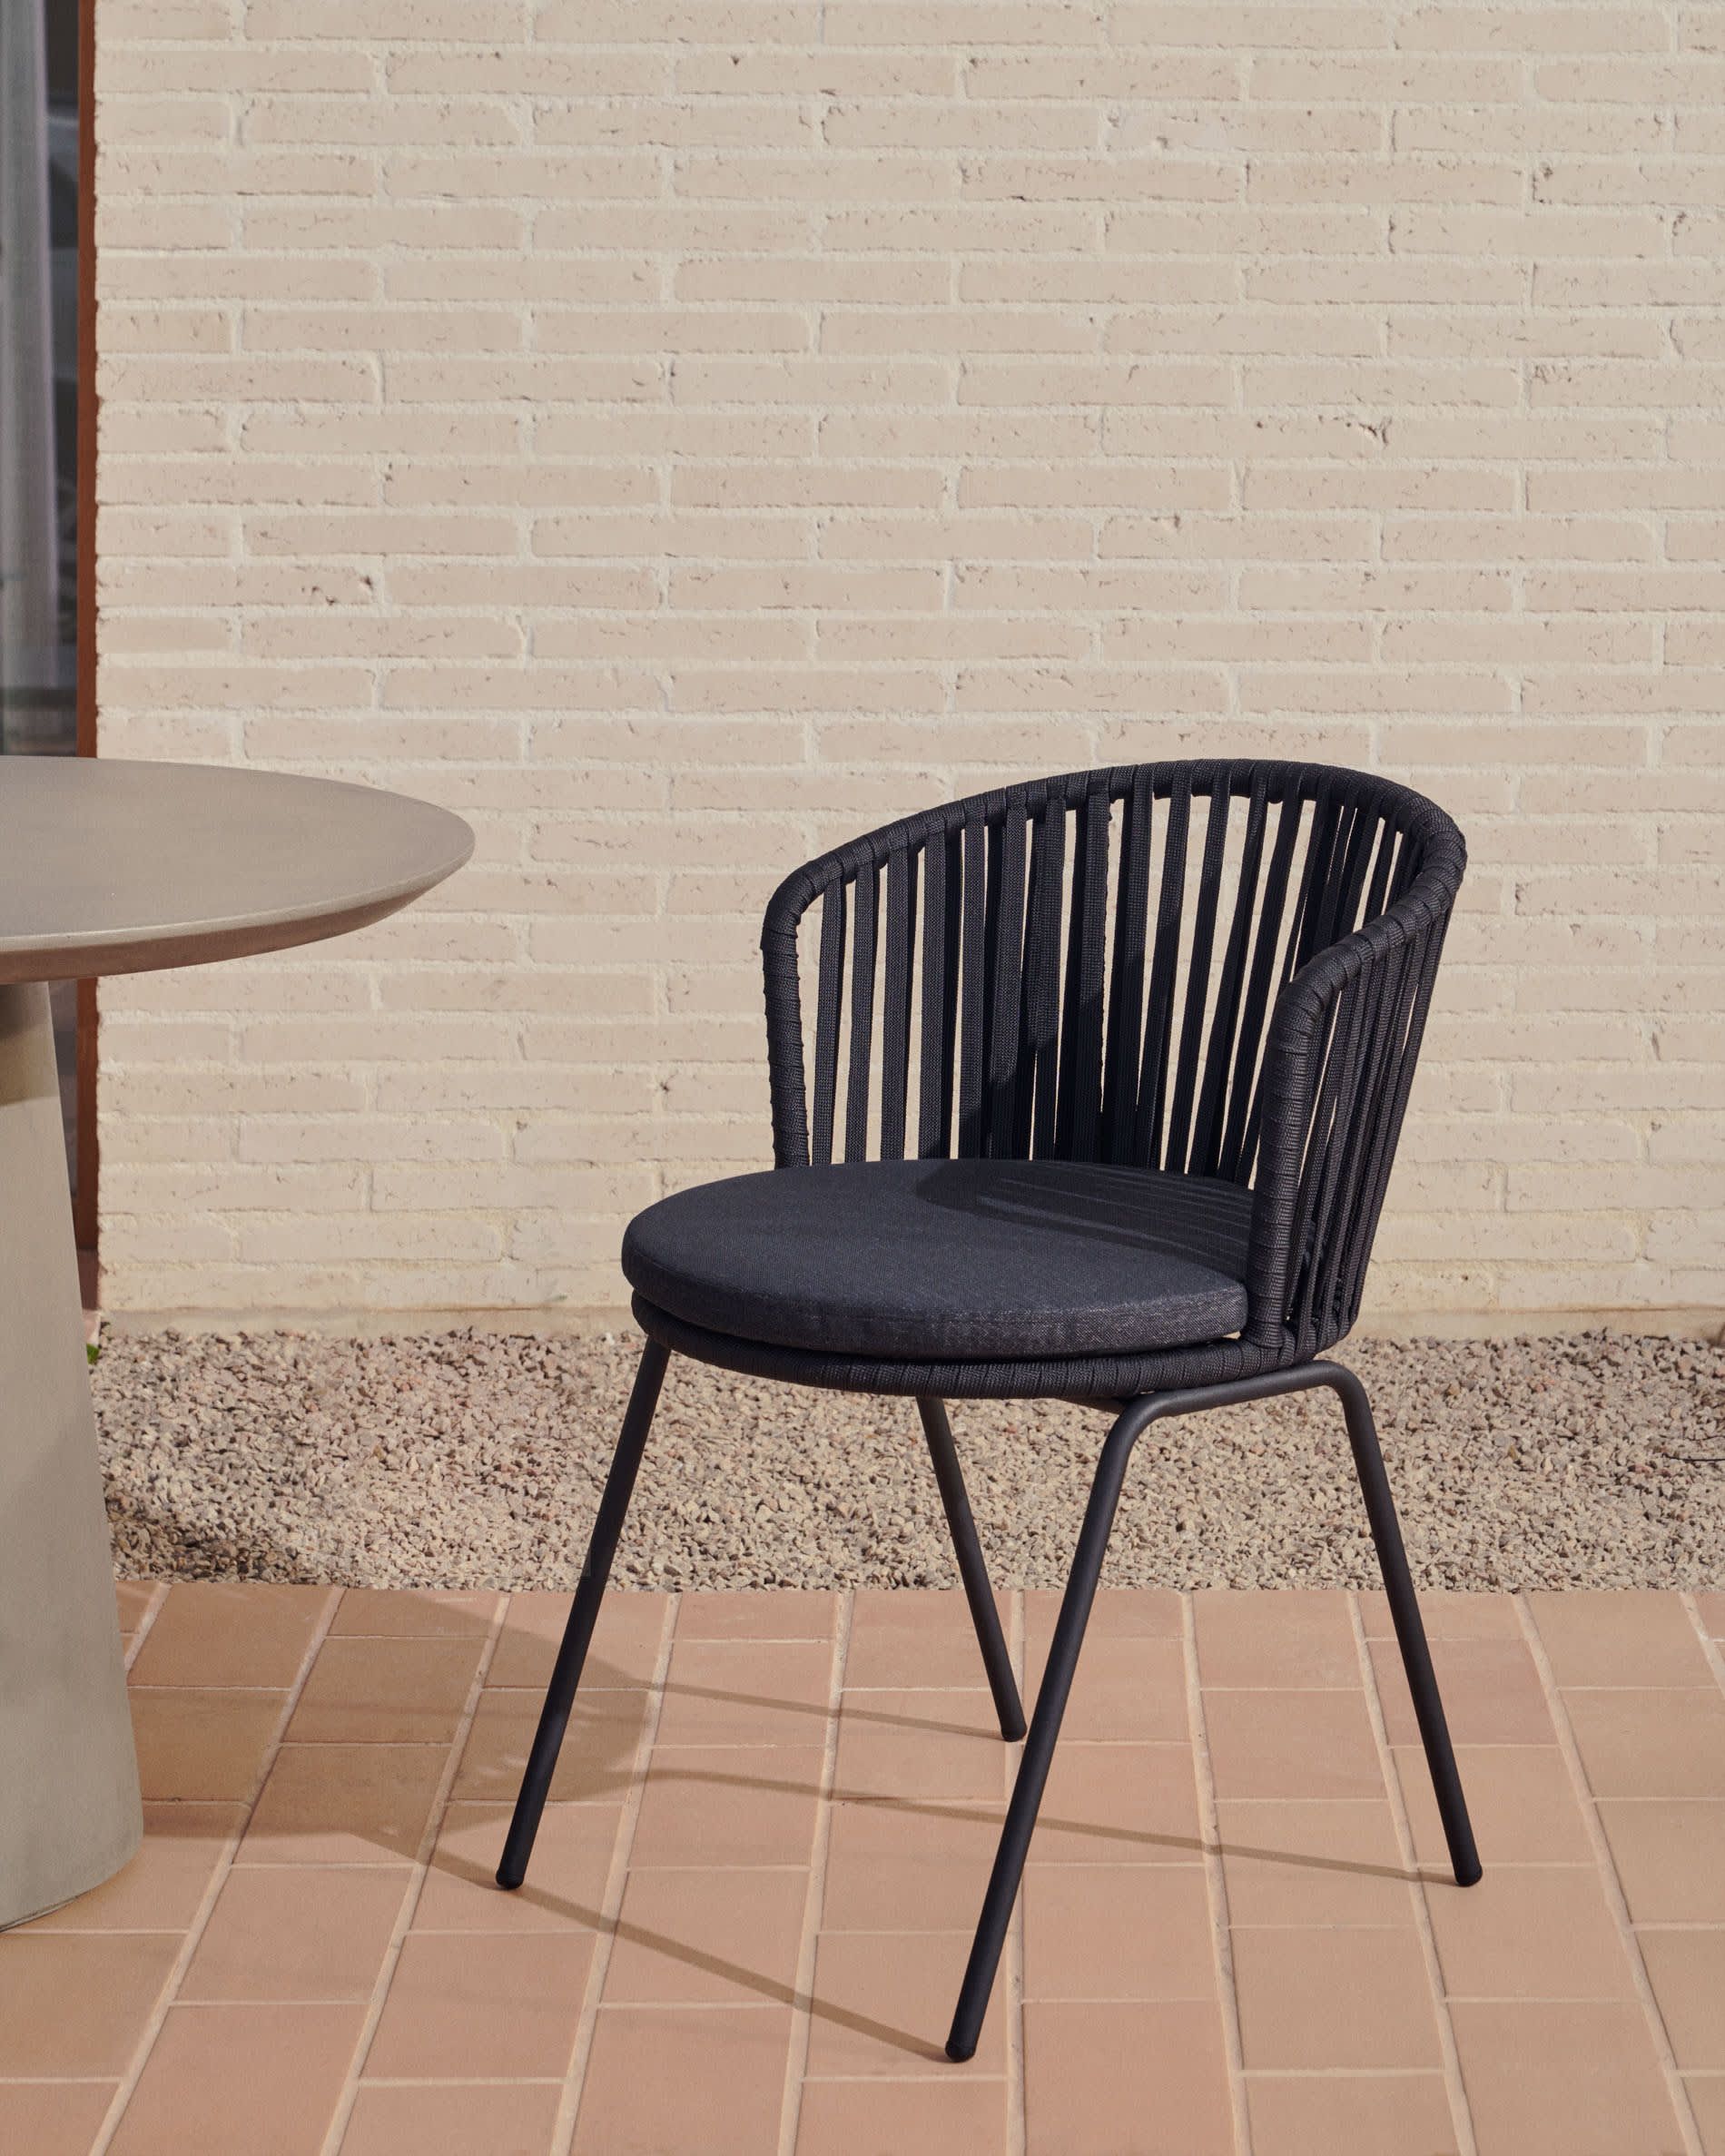 Saconca Садовый стул из шнура и стали с черной окраской Saconca